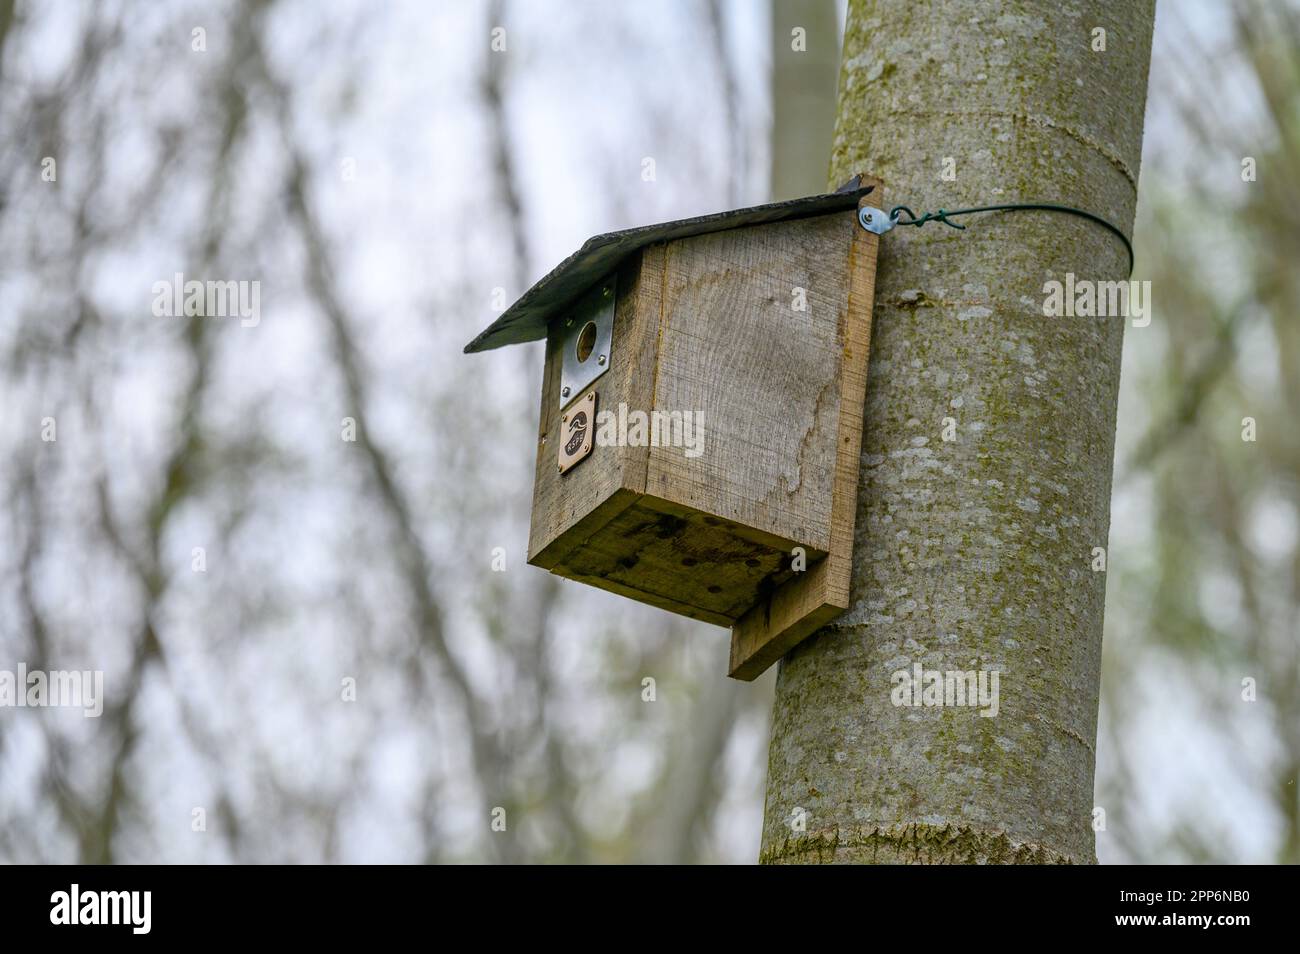 Scatole di nido di legno su alberi in una riserva naturale del consiglio per incoraggiare gli uccelli selvatici a riprodursi nella zona. Foto Stock